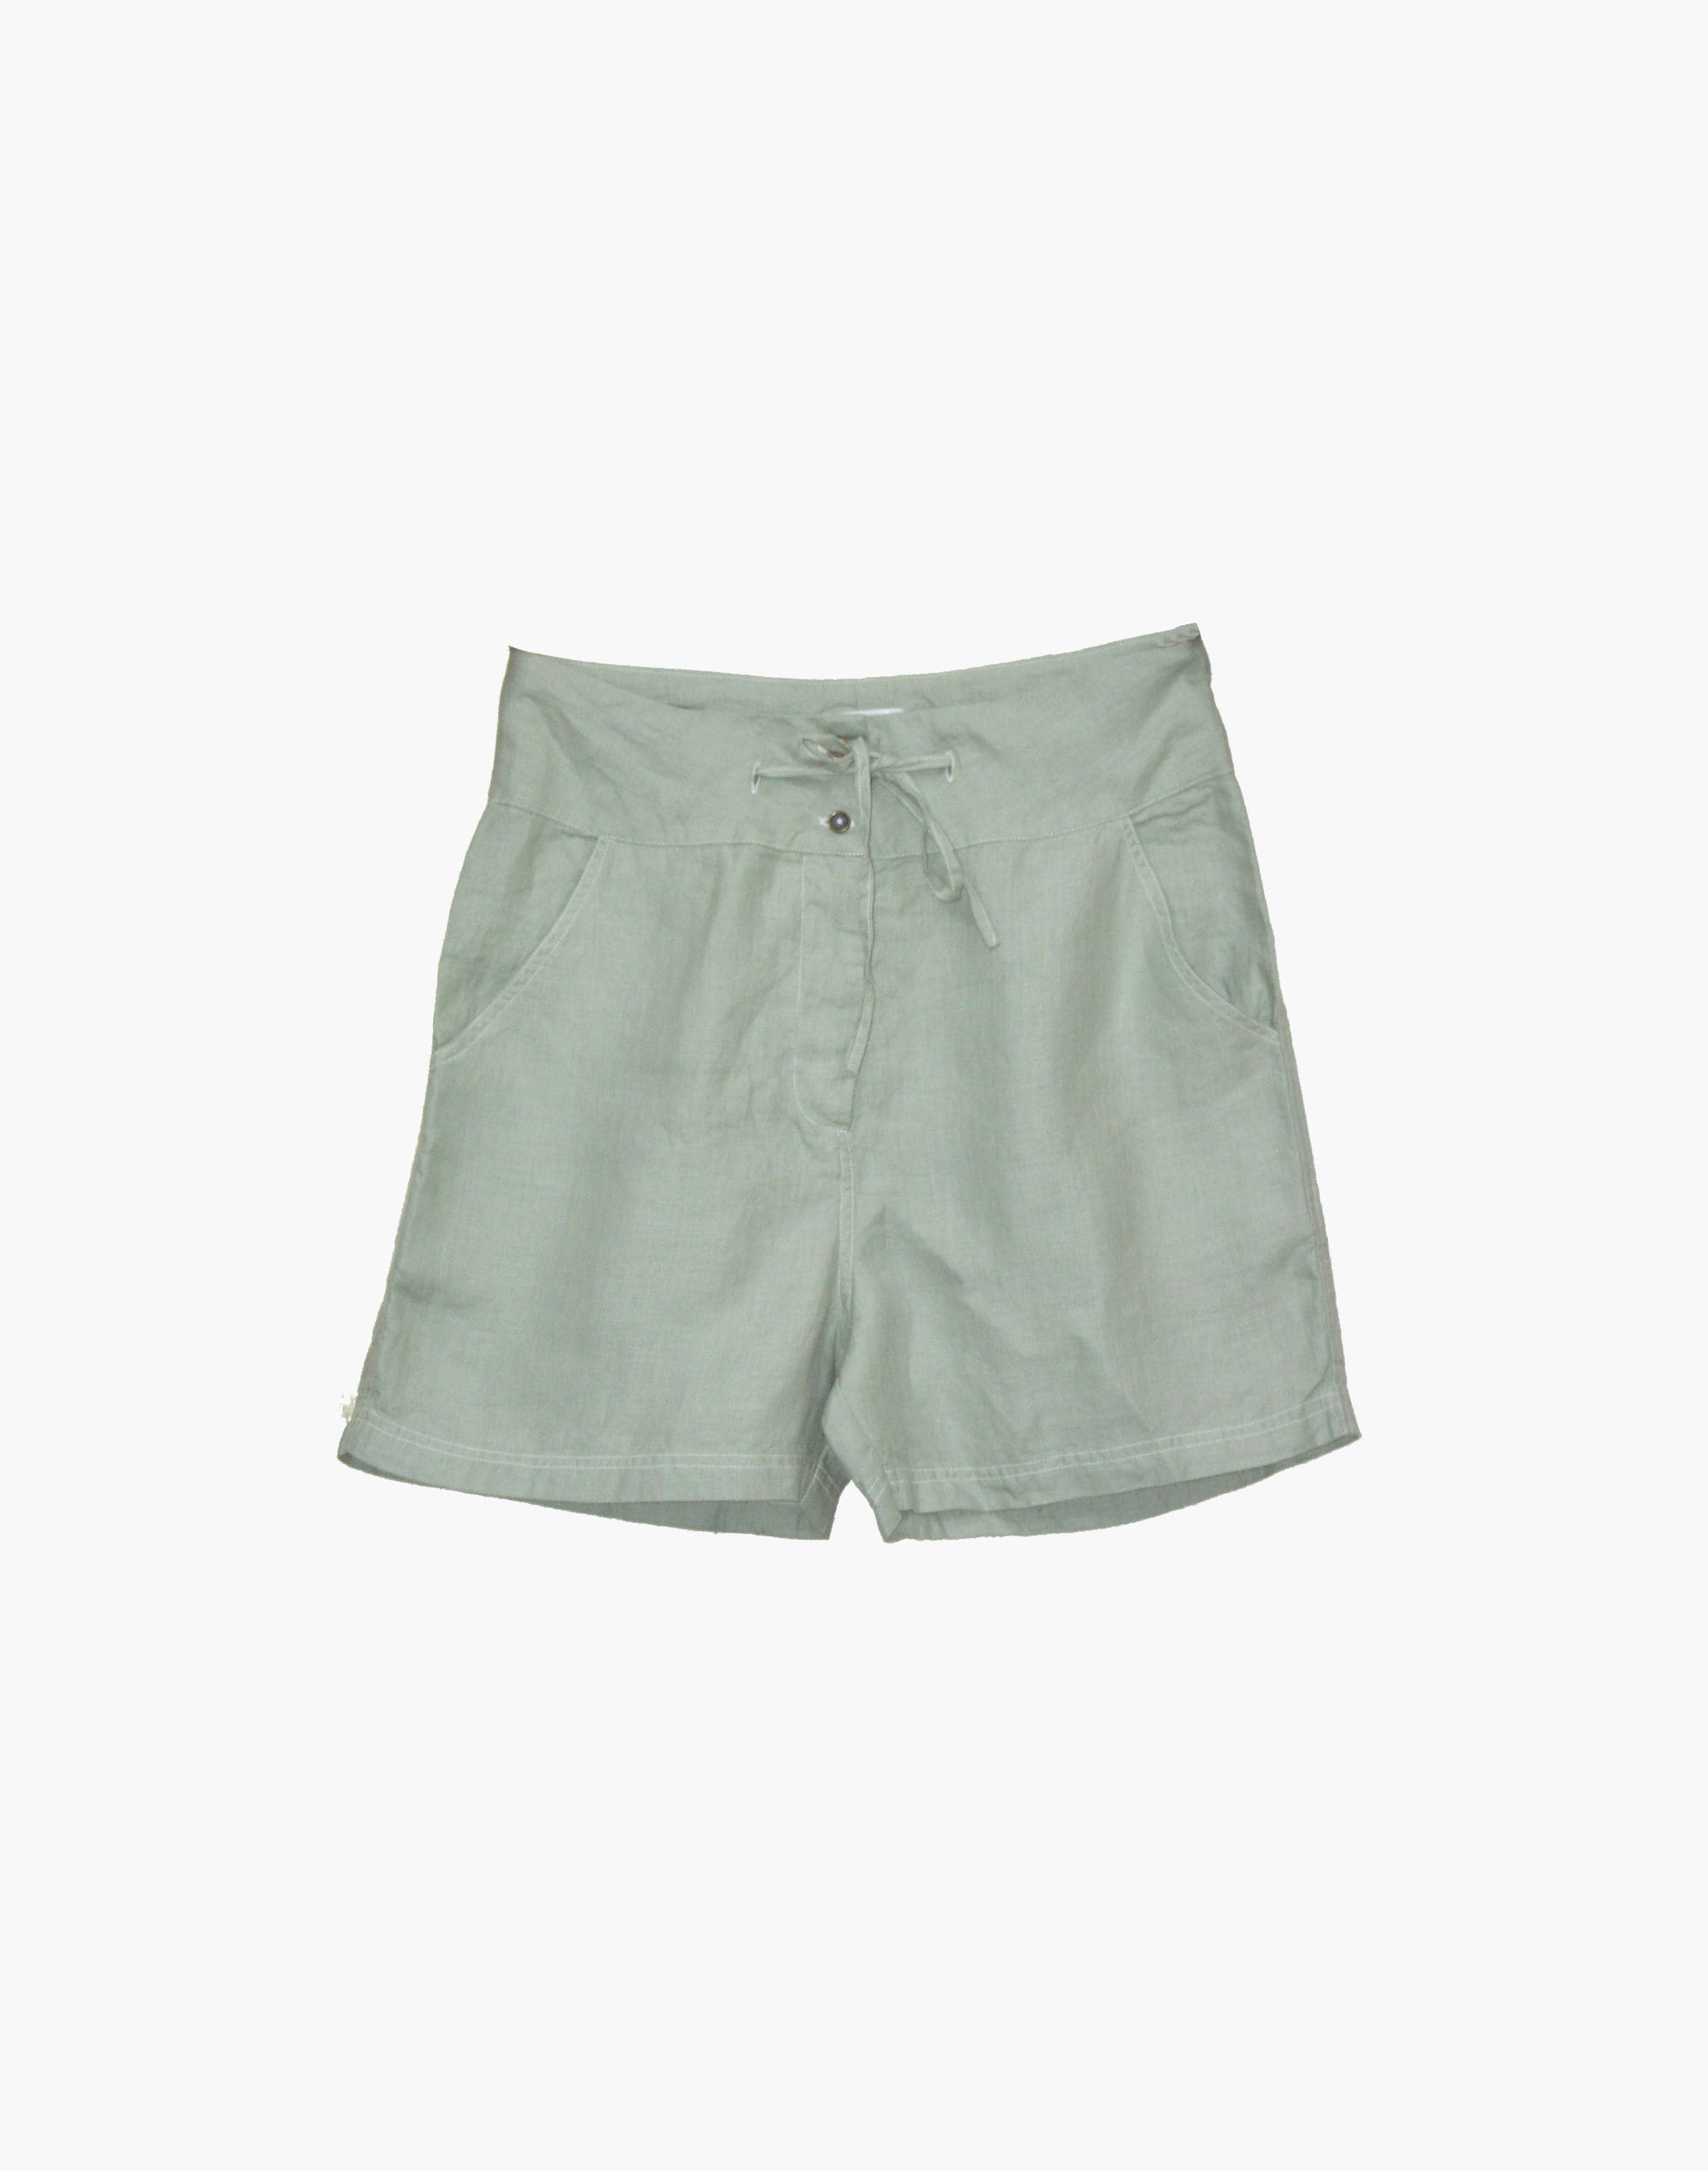 Reistor Sunkissed Saltwater shorts